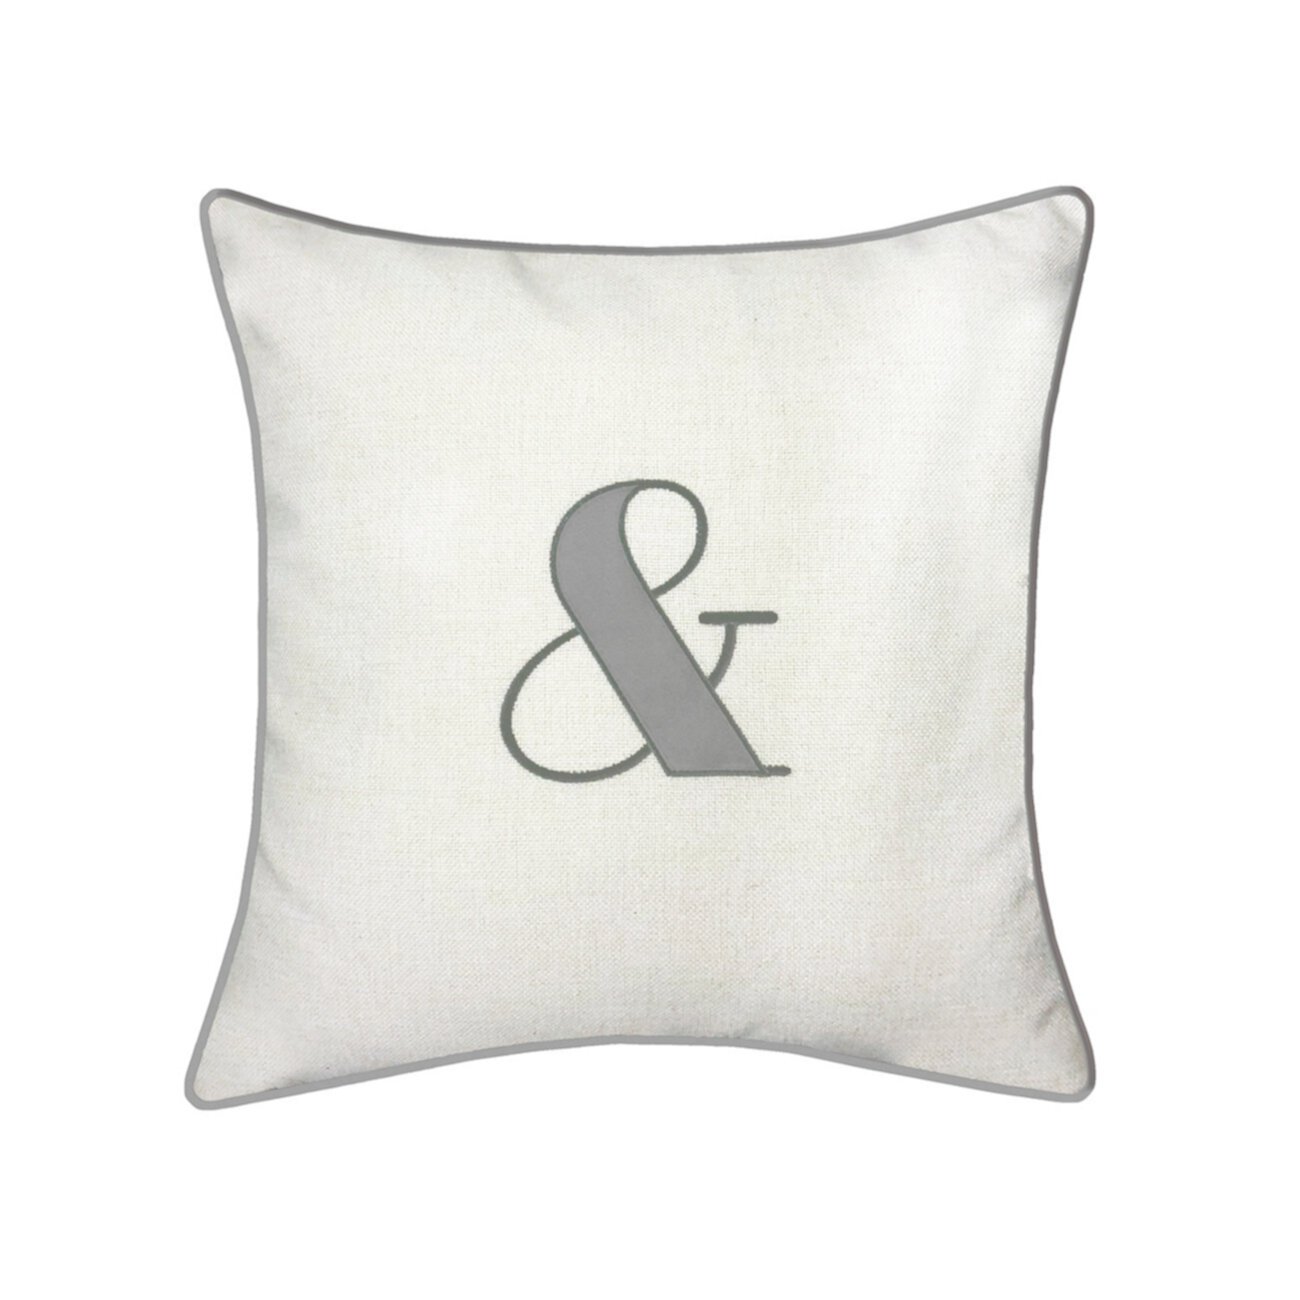 Праздничная подушка с вышивкой и аппликацией "&" Edie@Home